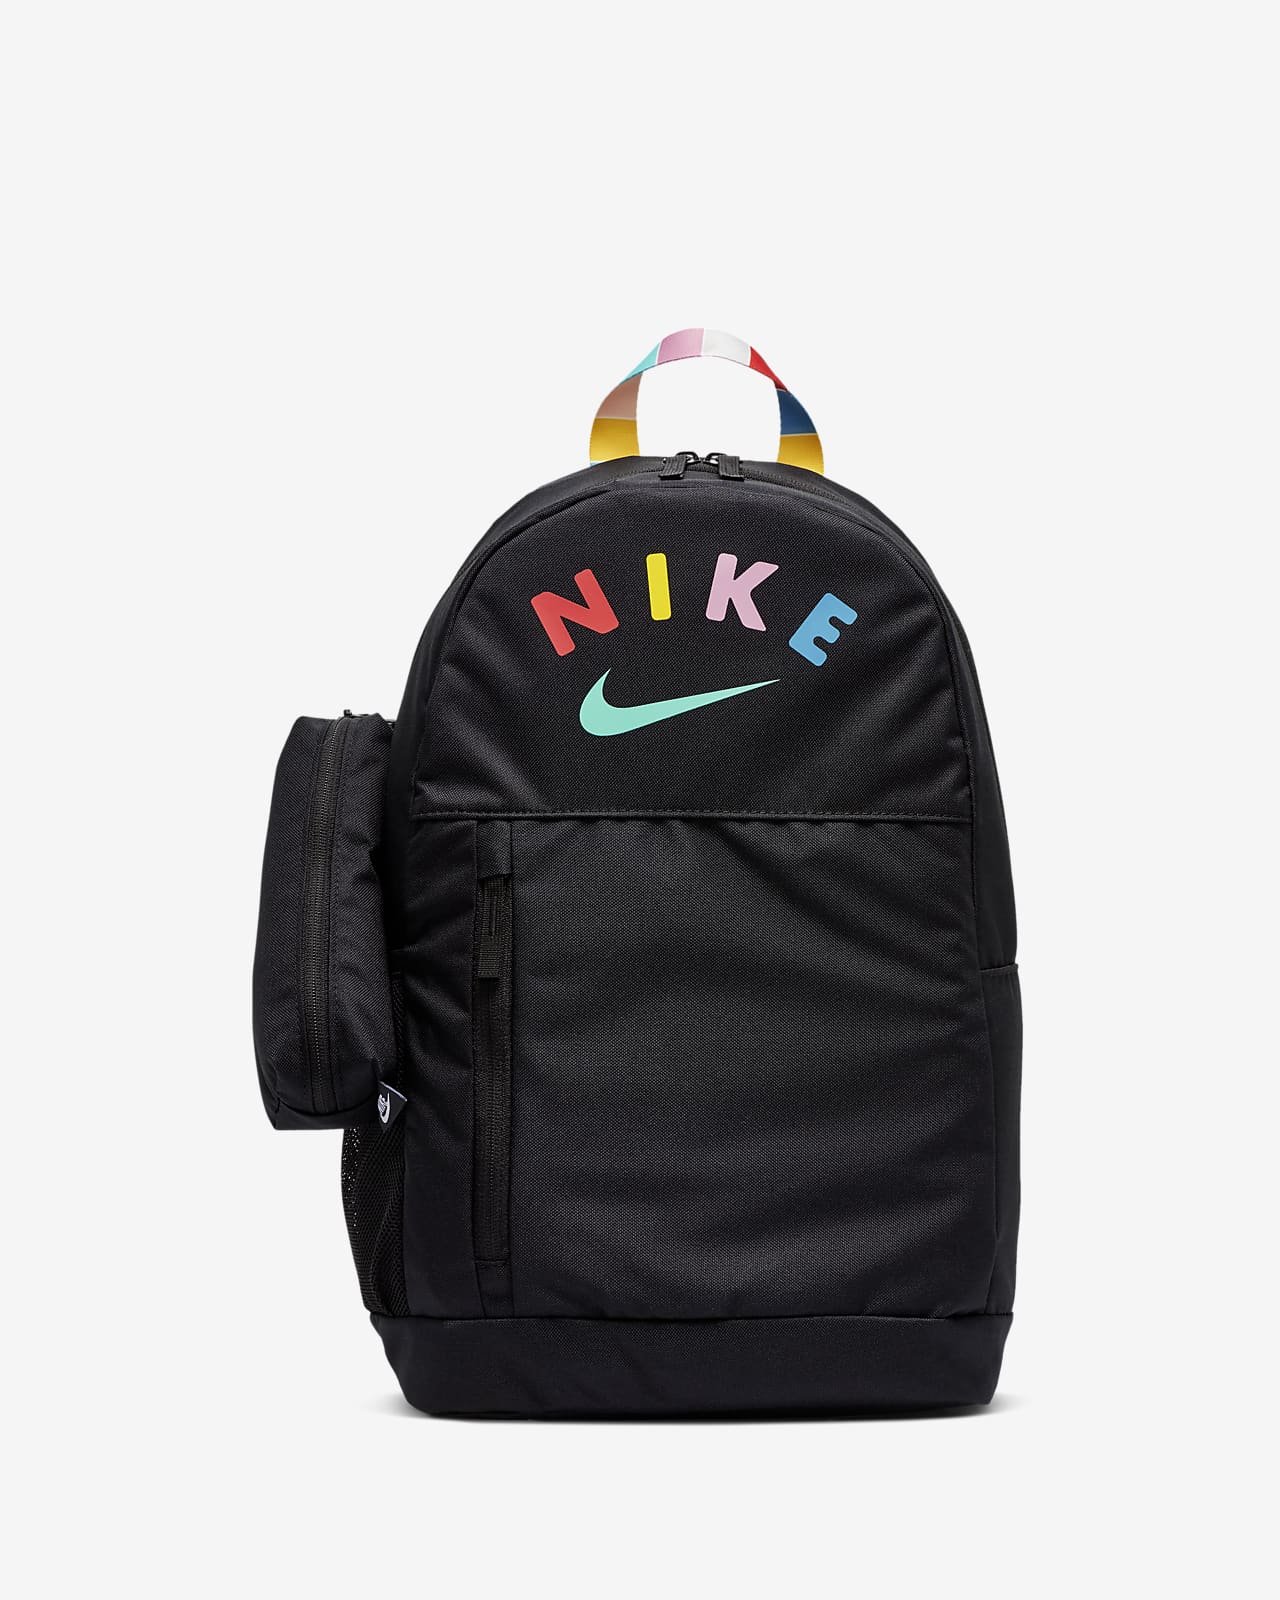 nike elemental backpack black and white